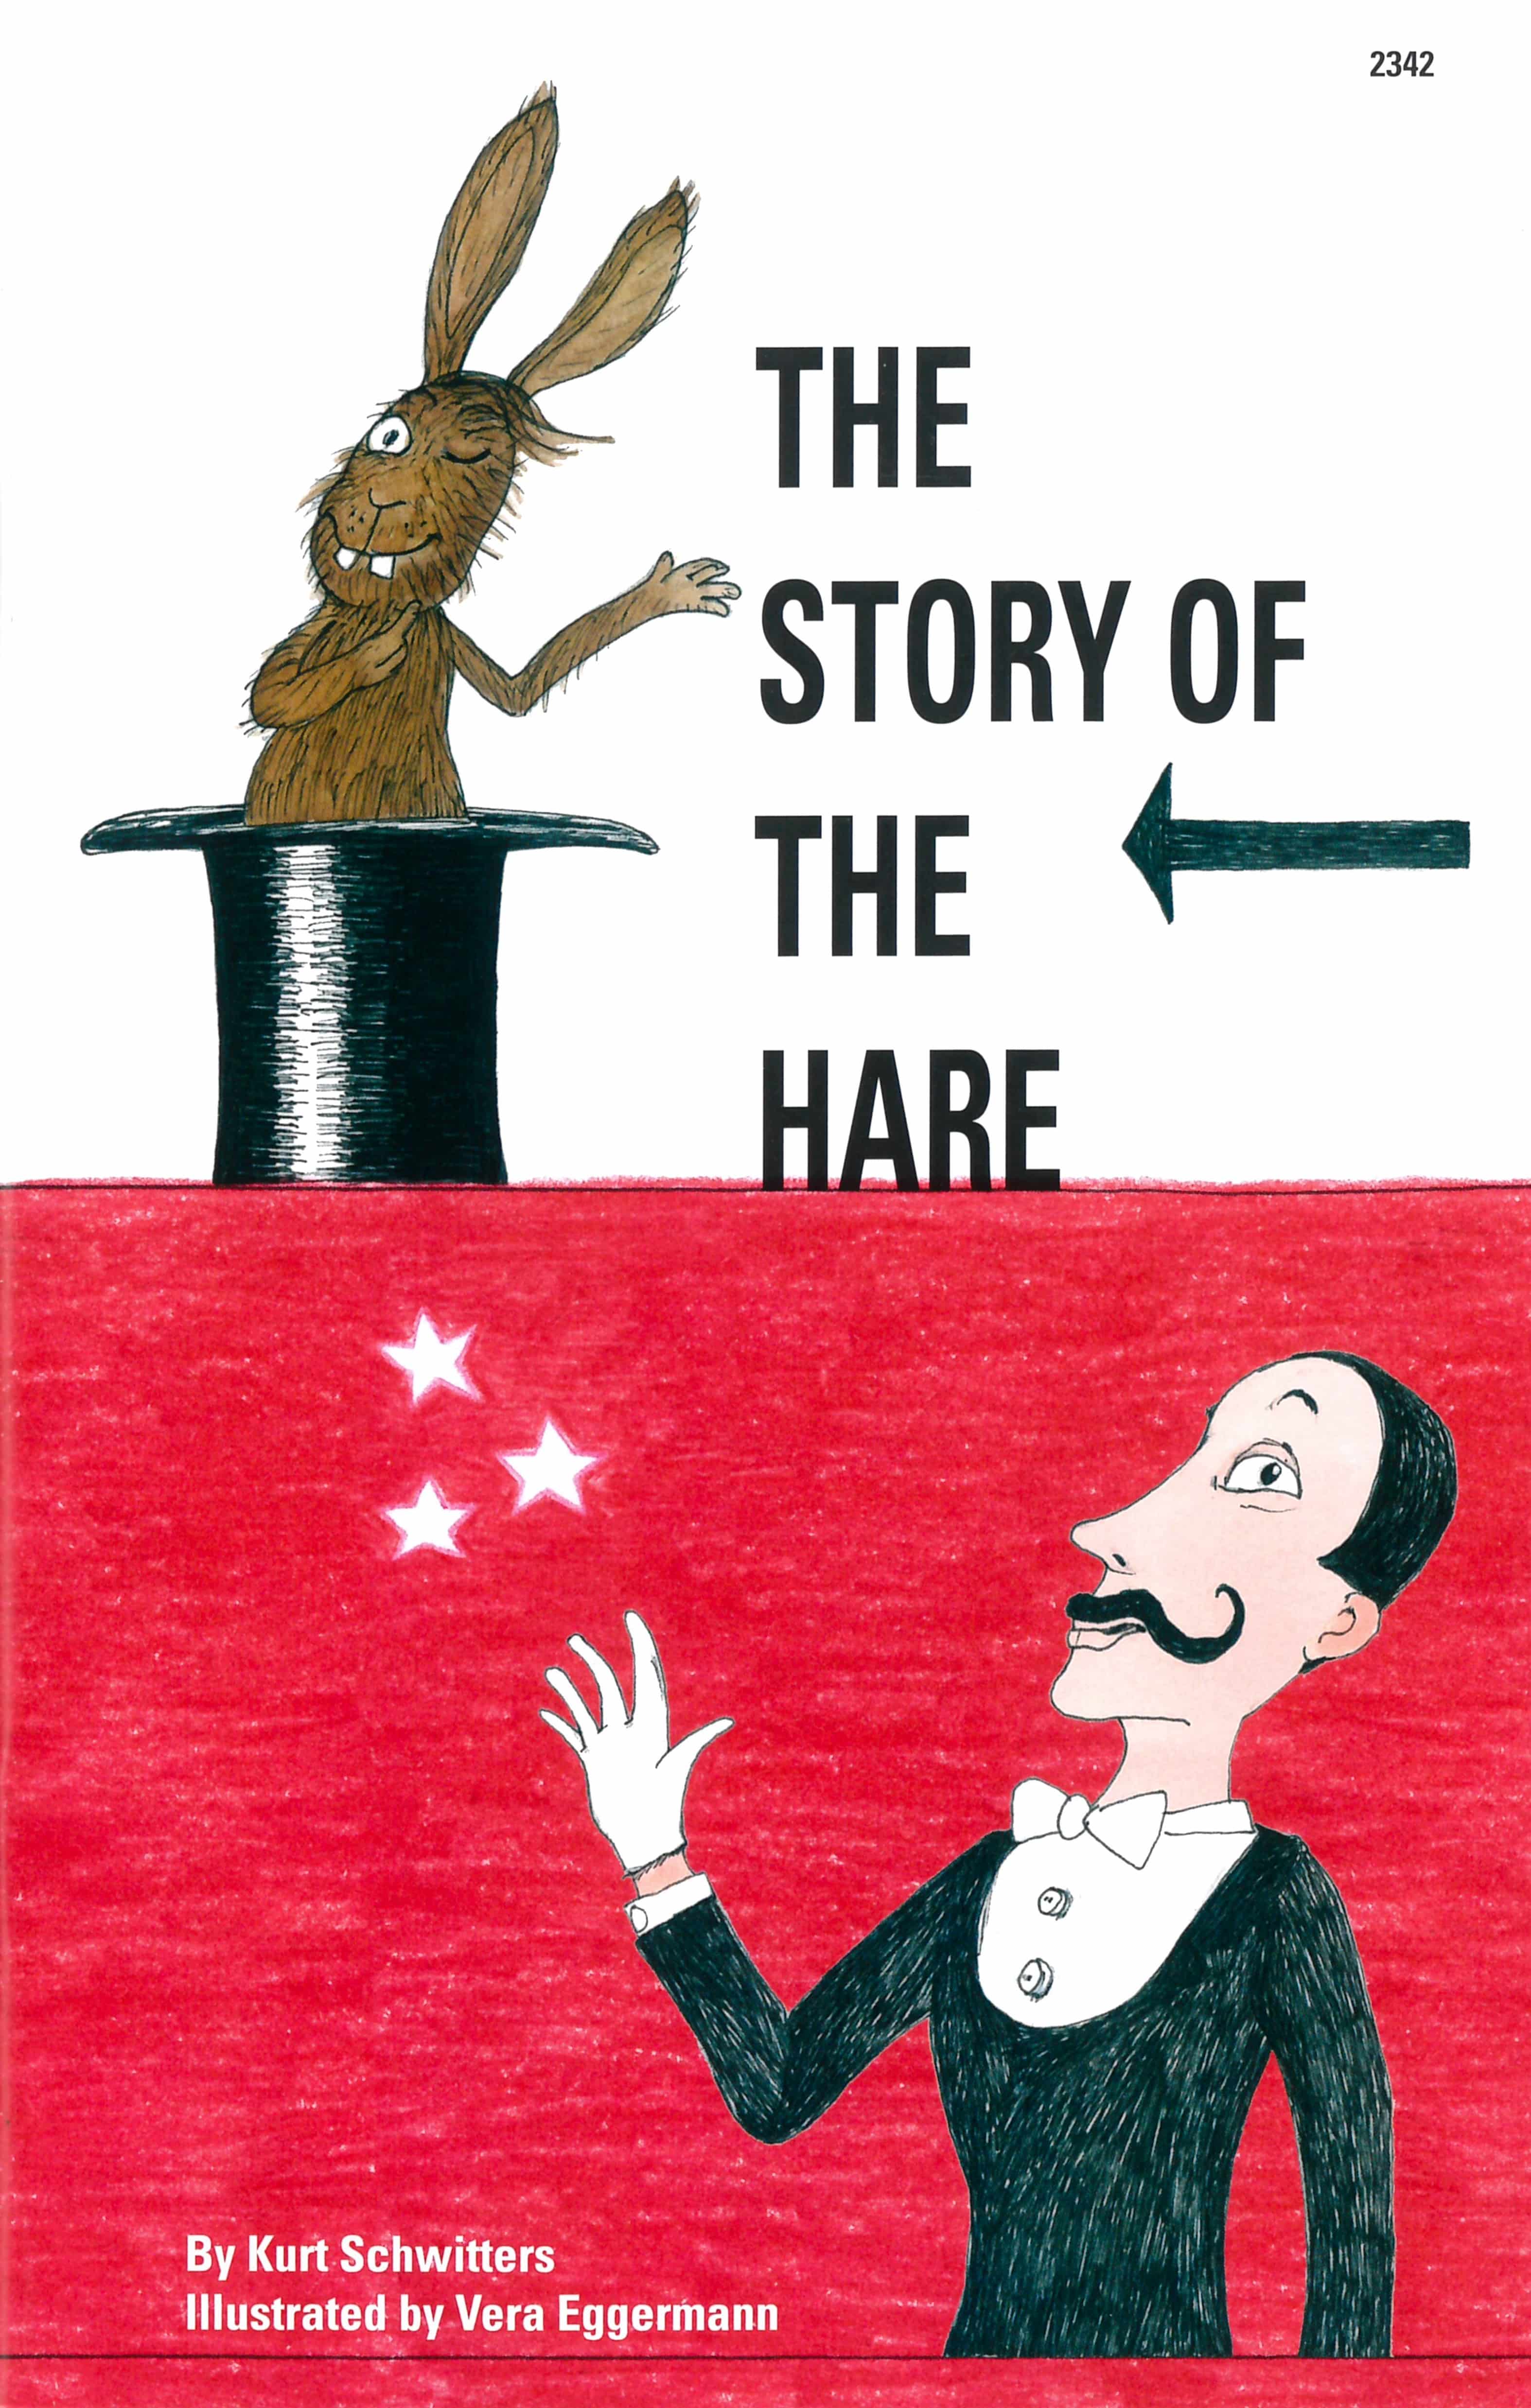 The Story of the Hare, ein Kinderbuch von Kurt Schwitters, Illustration von Vera Eggermann, SJW Verlag, Sprachspiele